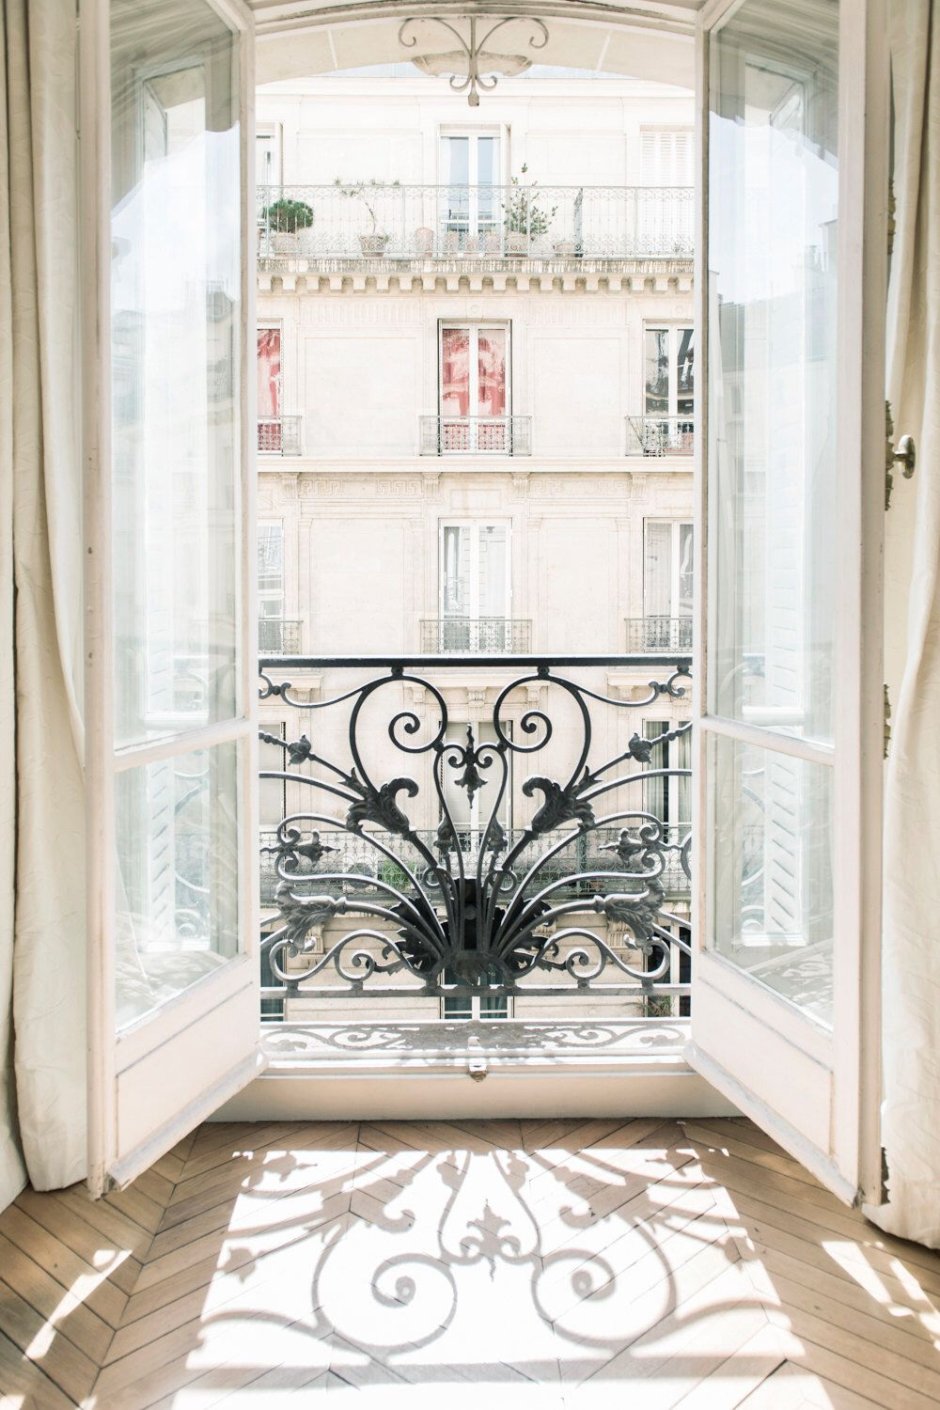 Французские окна в интерьере